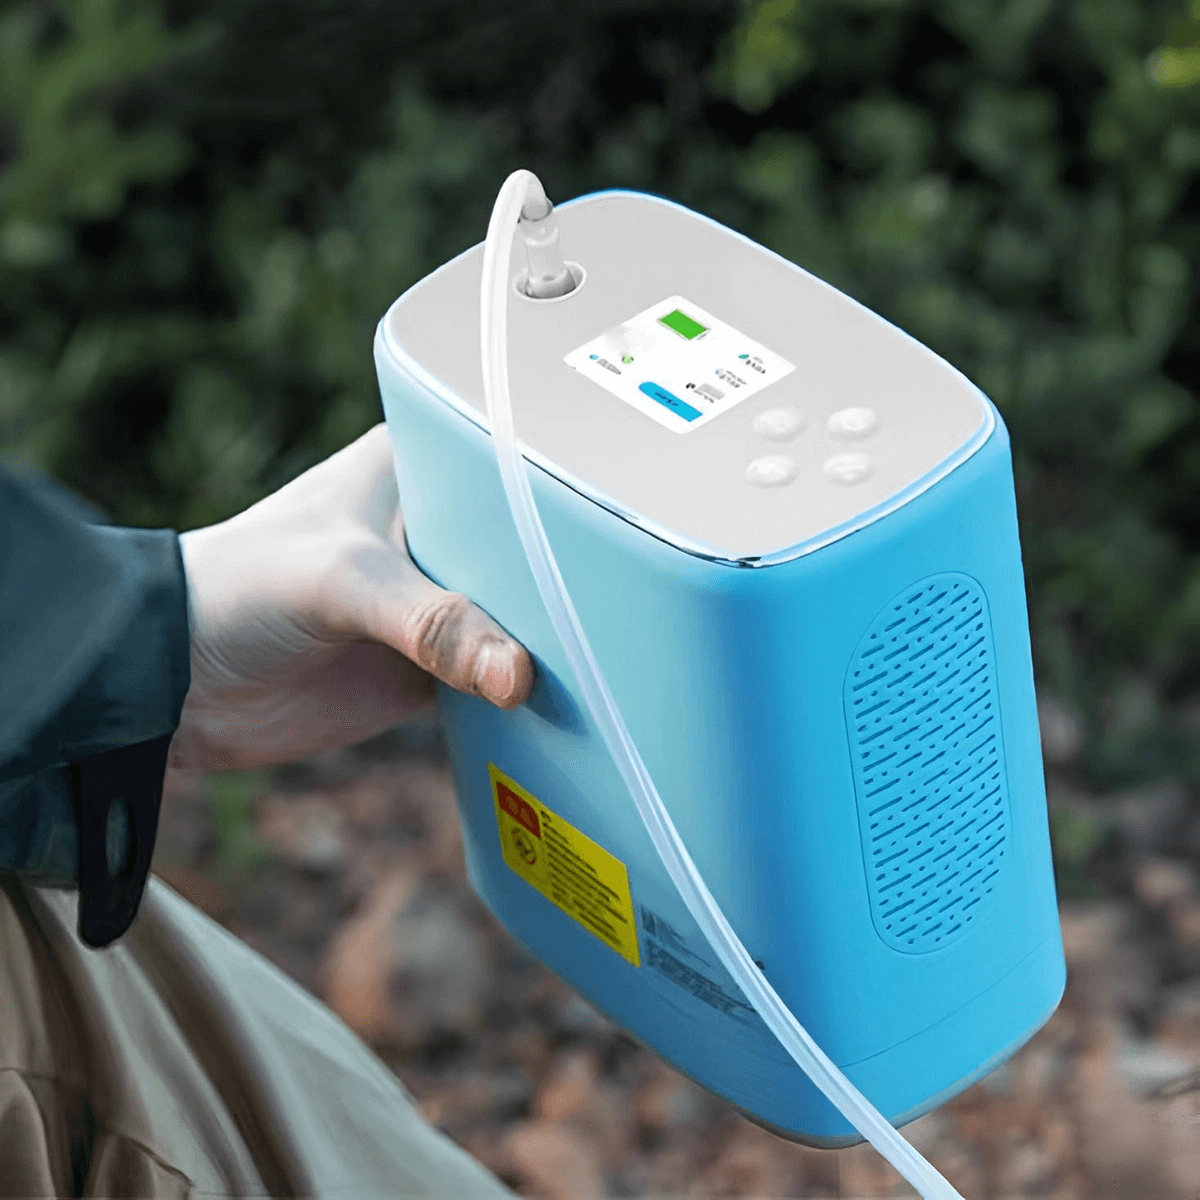 DEDAKJ de mano MINI portátil de oxígeno Cocnentrator 3 litros móvil ligero continúa oxígeno que hace la máquina del generador para la actividad de viaje al aire libre, con batería de litio recargable y mochila